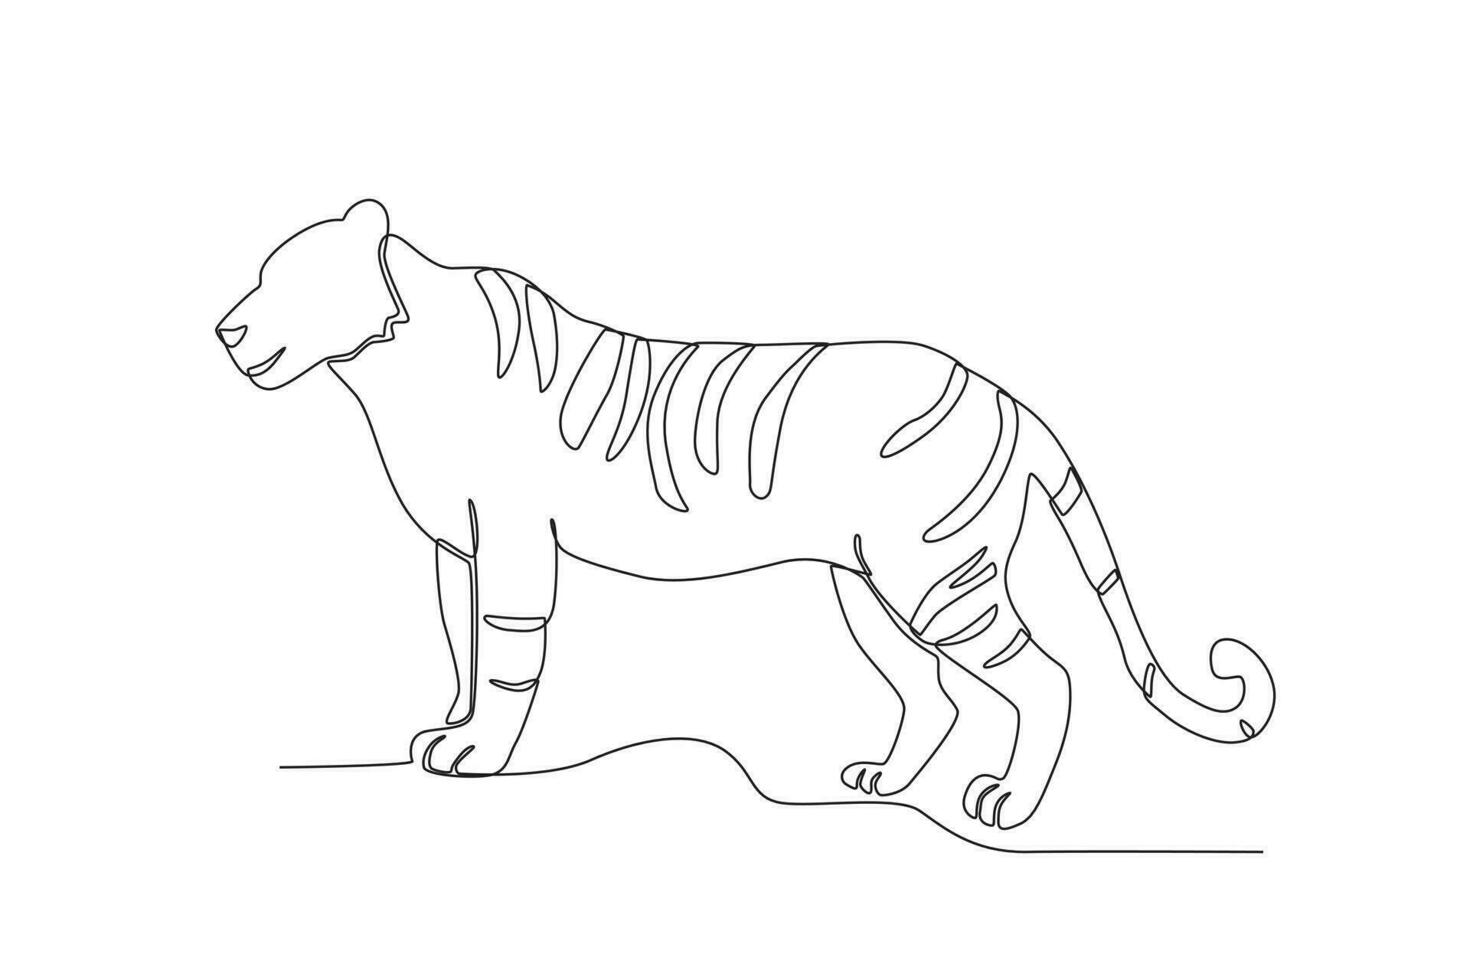 soltero uno línea dibujo de un tigre. continuo línea dibujar diseño gráfico vector ilustración.